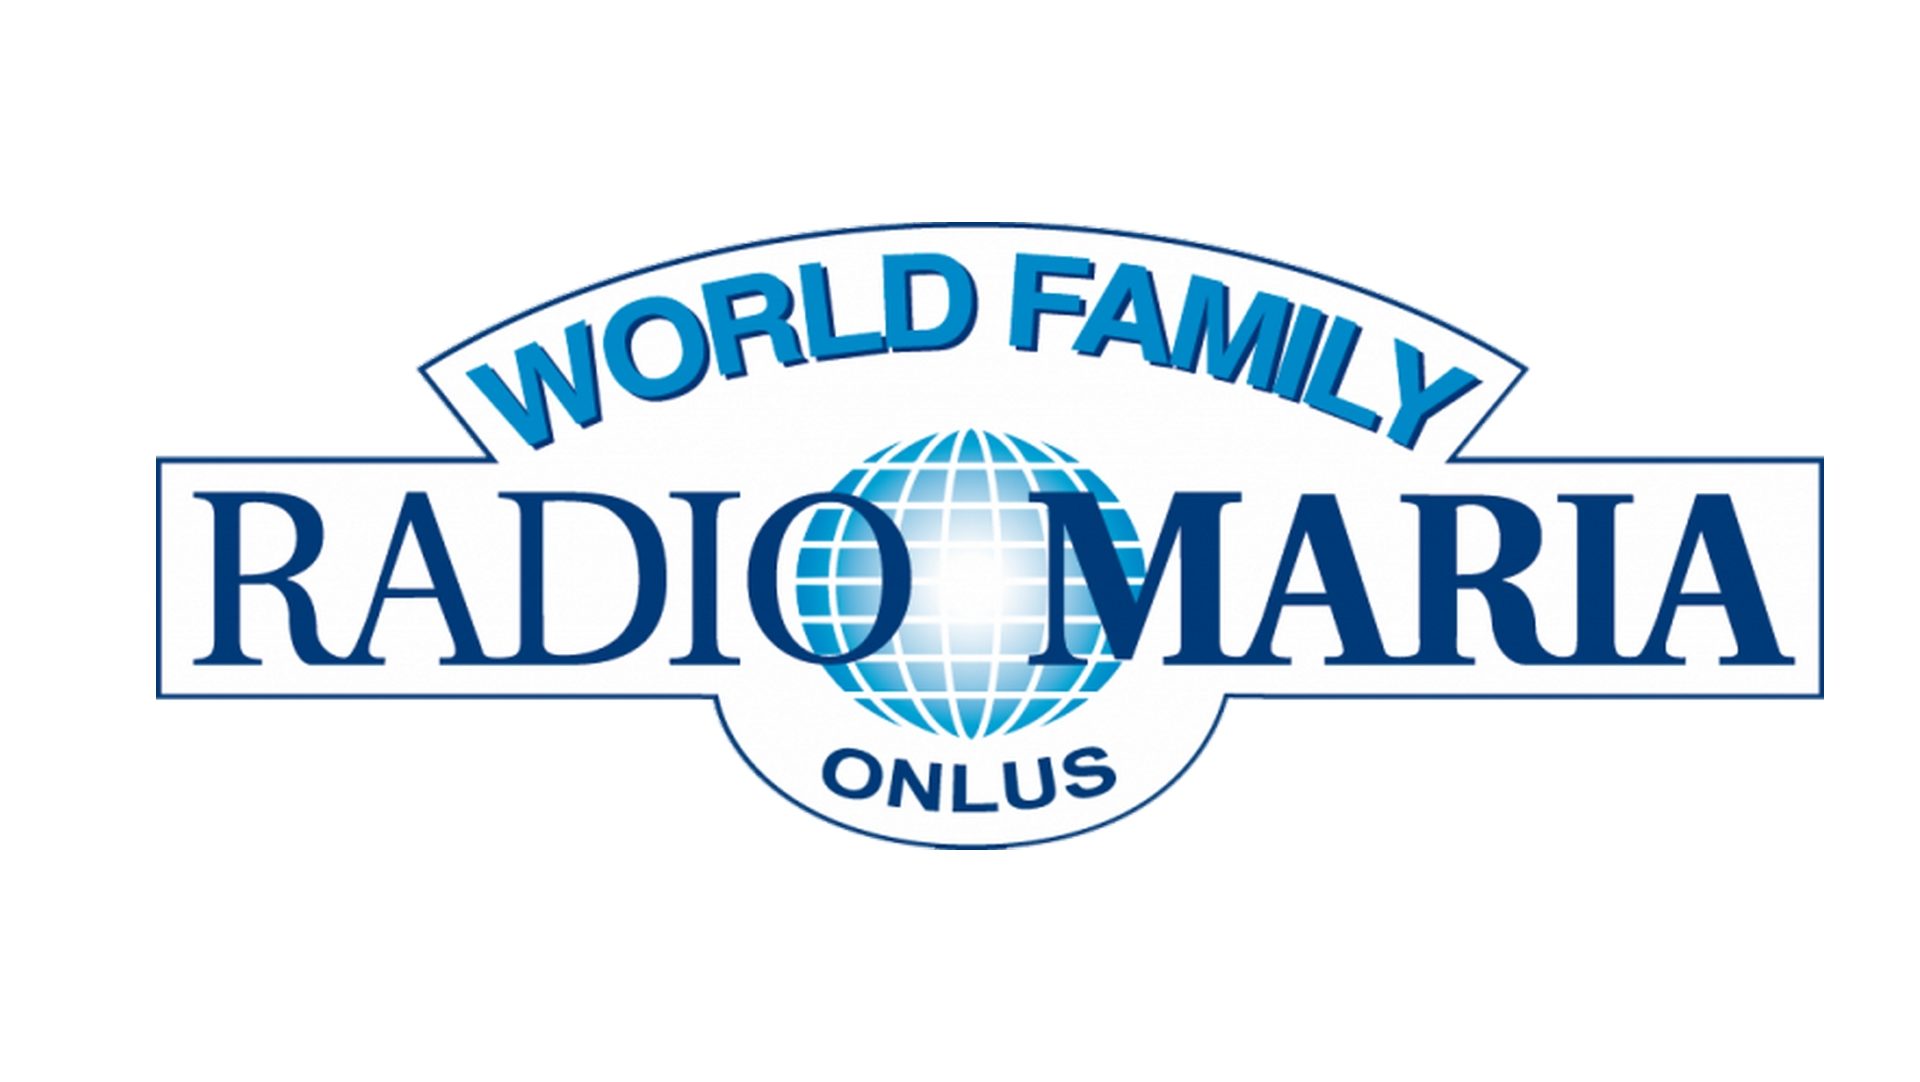 Le réseau mondial de Radio Maria est présent dans 74 pays